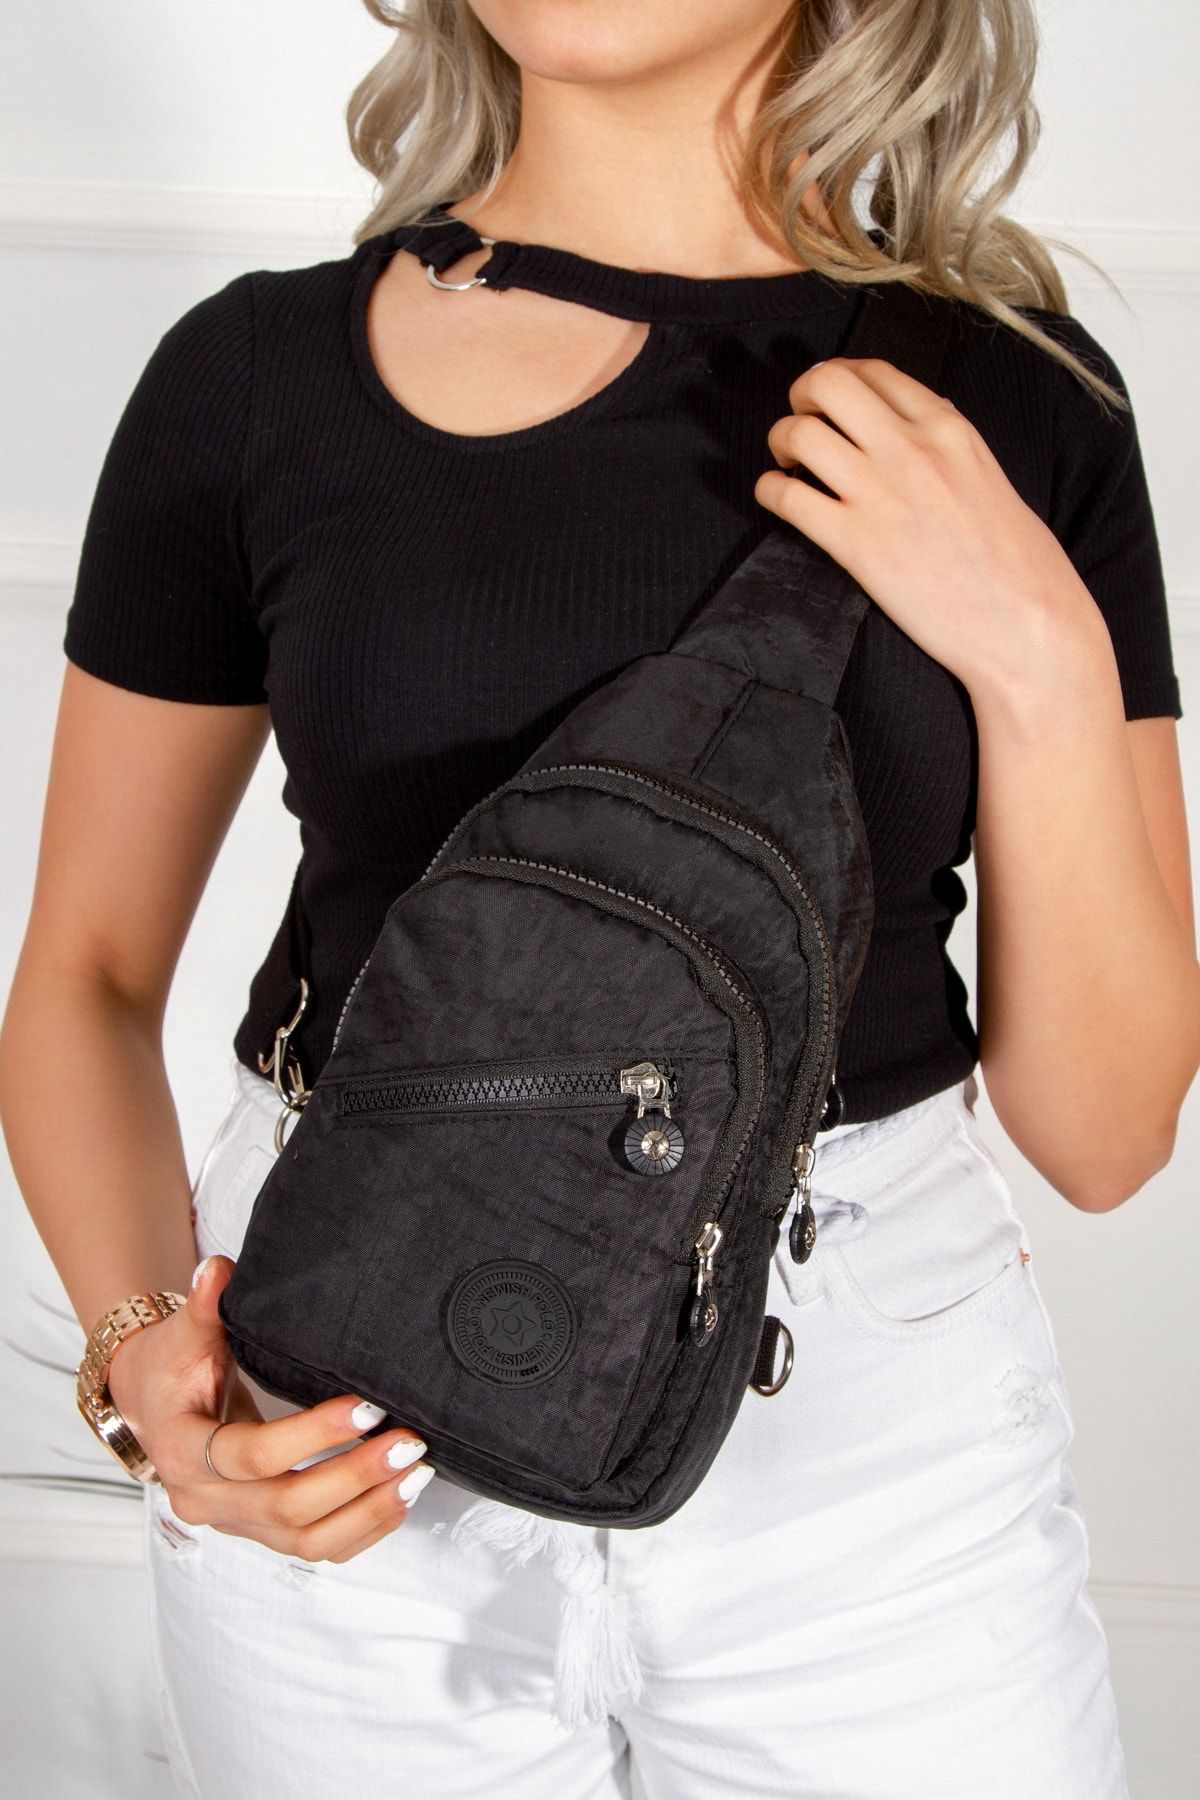 Leyl Çarpraz Göğüs Çantası Tek Kol Çanta Omuz Body Bag Mini Sırt Çantası